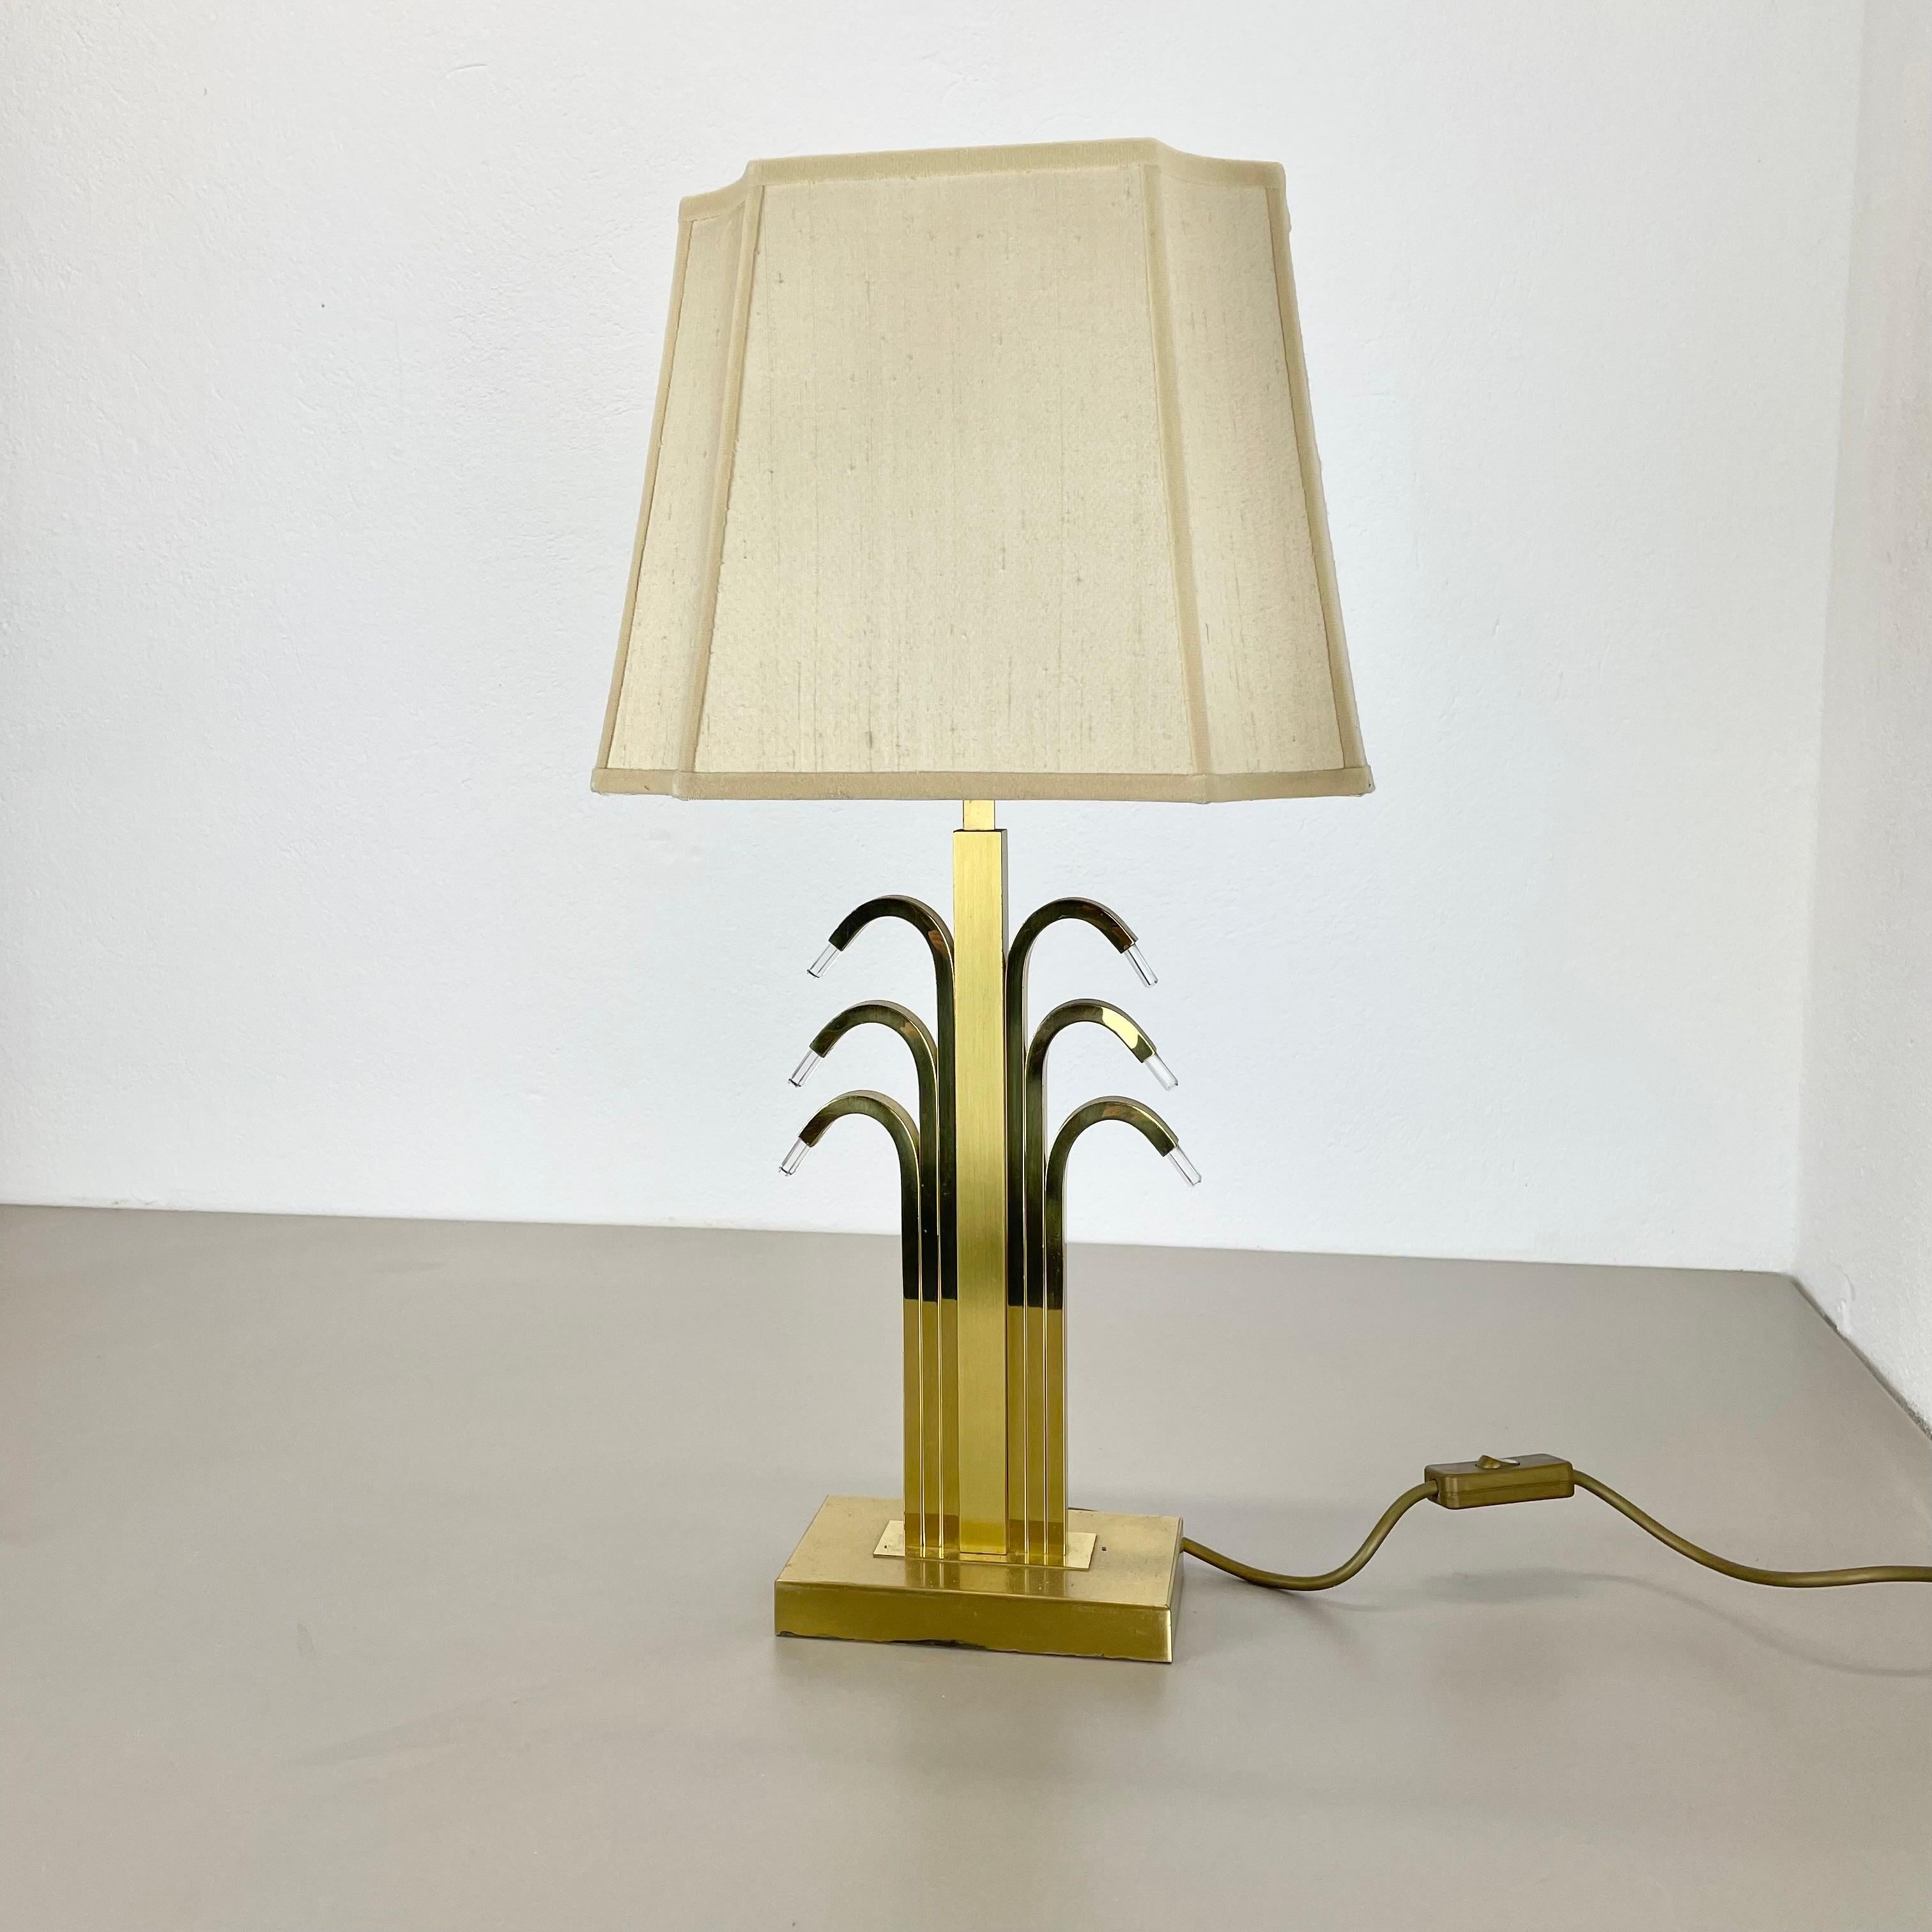 Article :

base de lampe de table moderniste en laiton


Origine :

Allemagne


Décennie :

1970s



Cette lampe vintage originale a été conçue et produite dans les années 1970 en Allemagne par WKR LIGHTS . Le luminaire est composé de laiton et